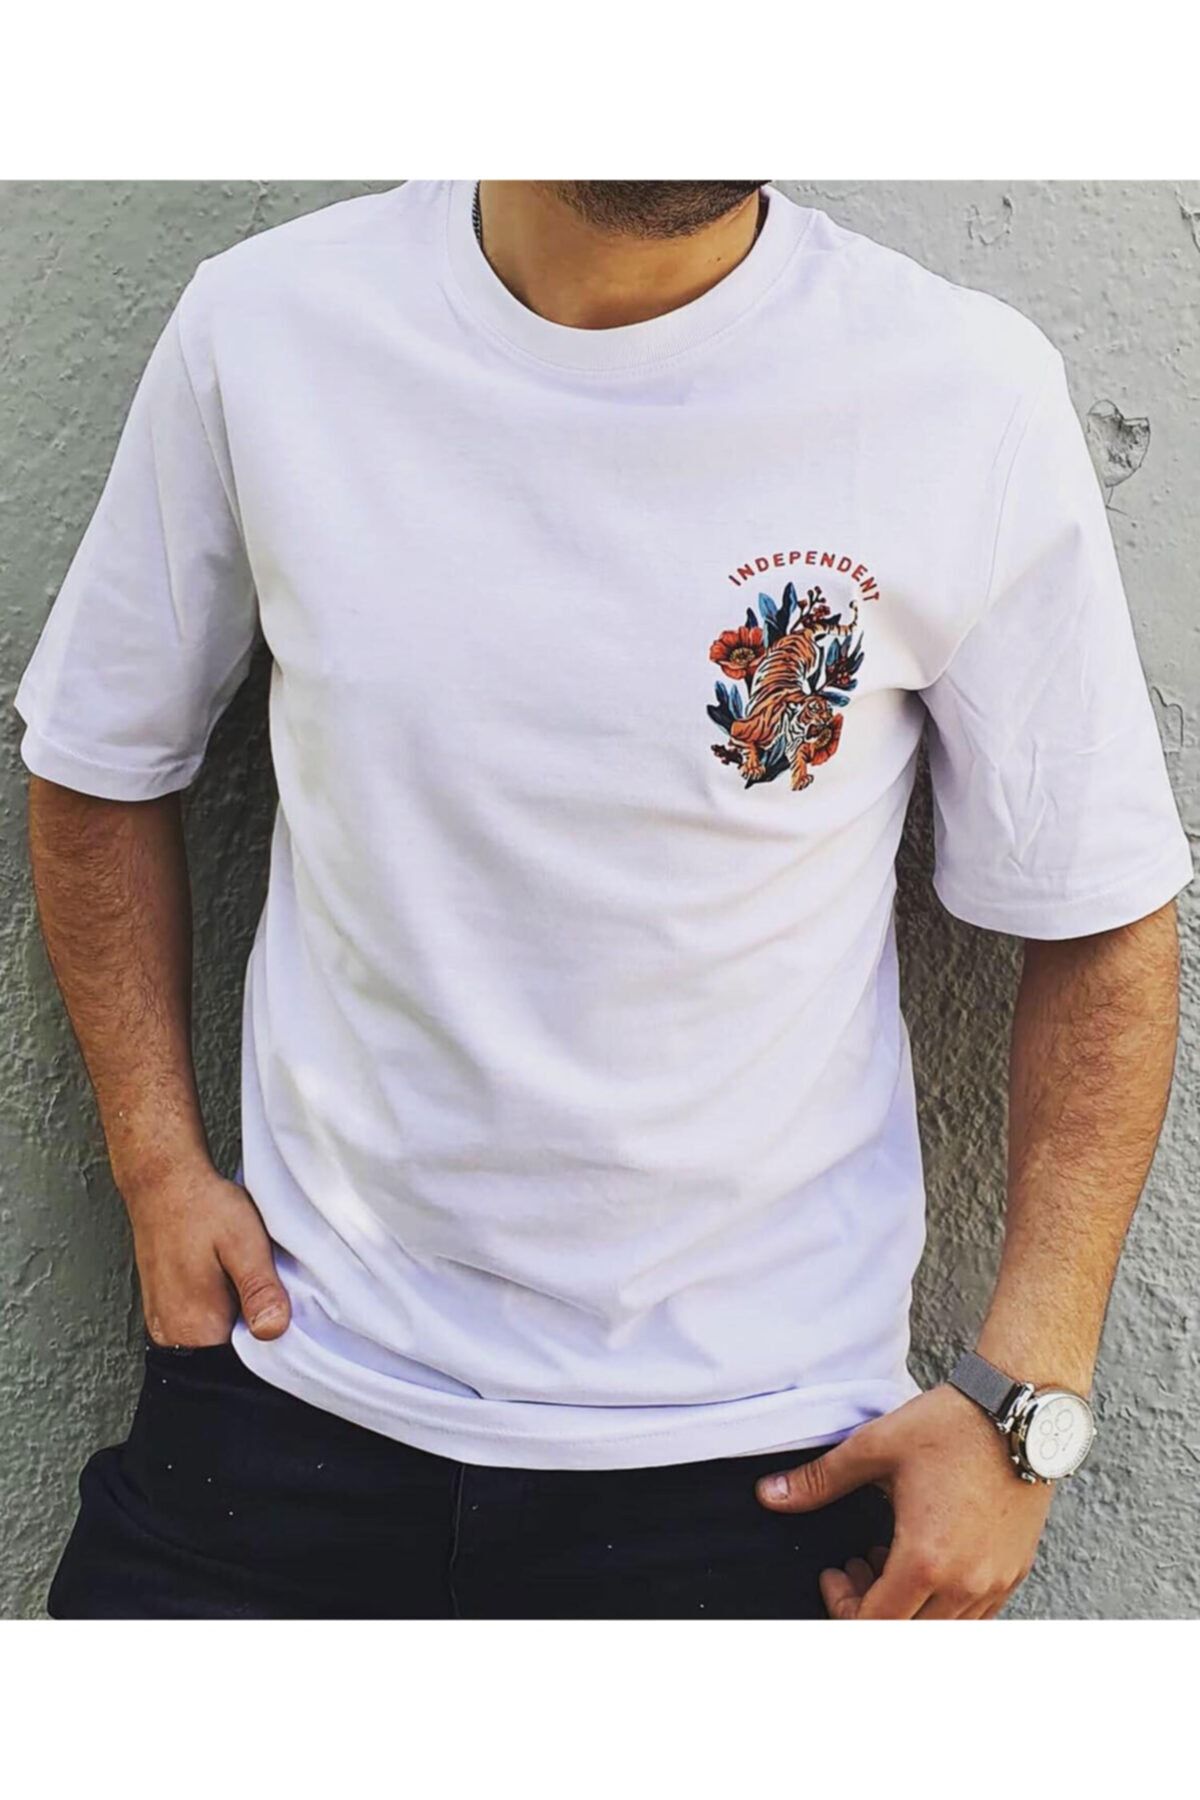 İnsane Minds Unisex Beyaz Sırt Baskılı Kaplan Desenli Oversize T-shirt